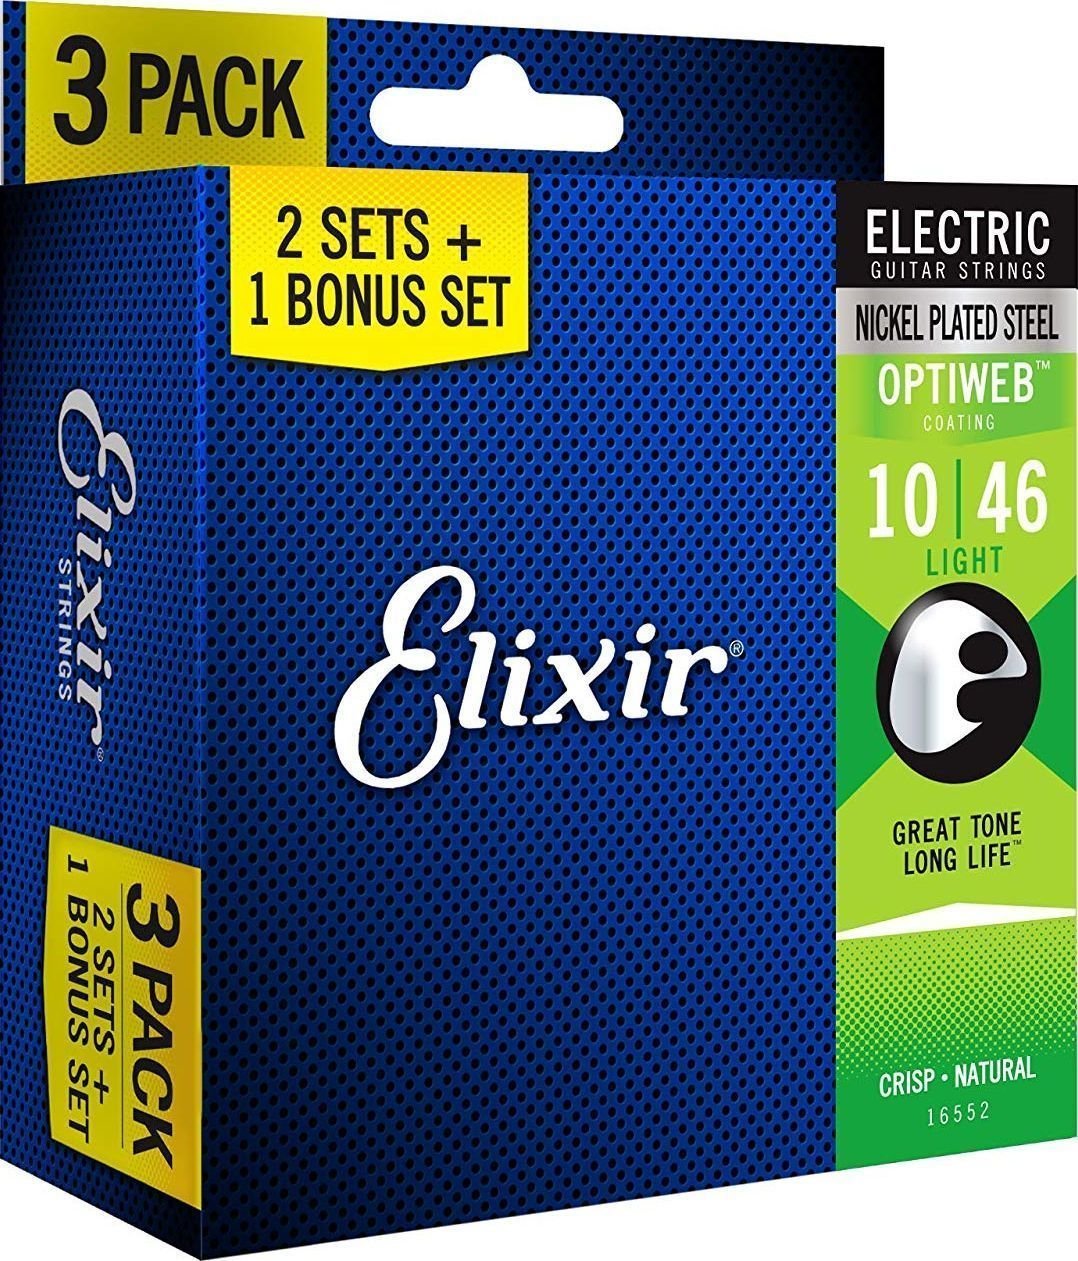 Saiten für E-Gitarre Elixir 16552 OPTIWEB Coating Light 10-46 3-PACK